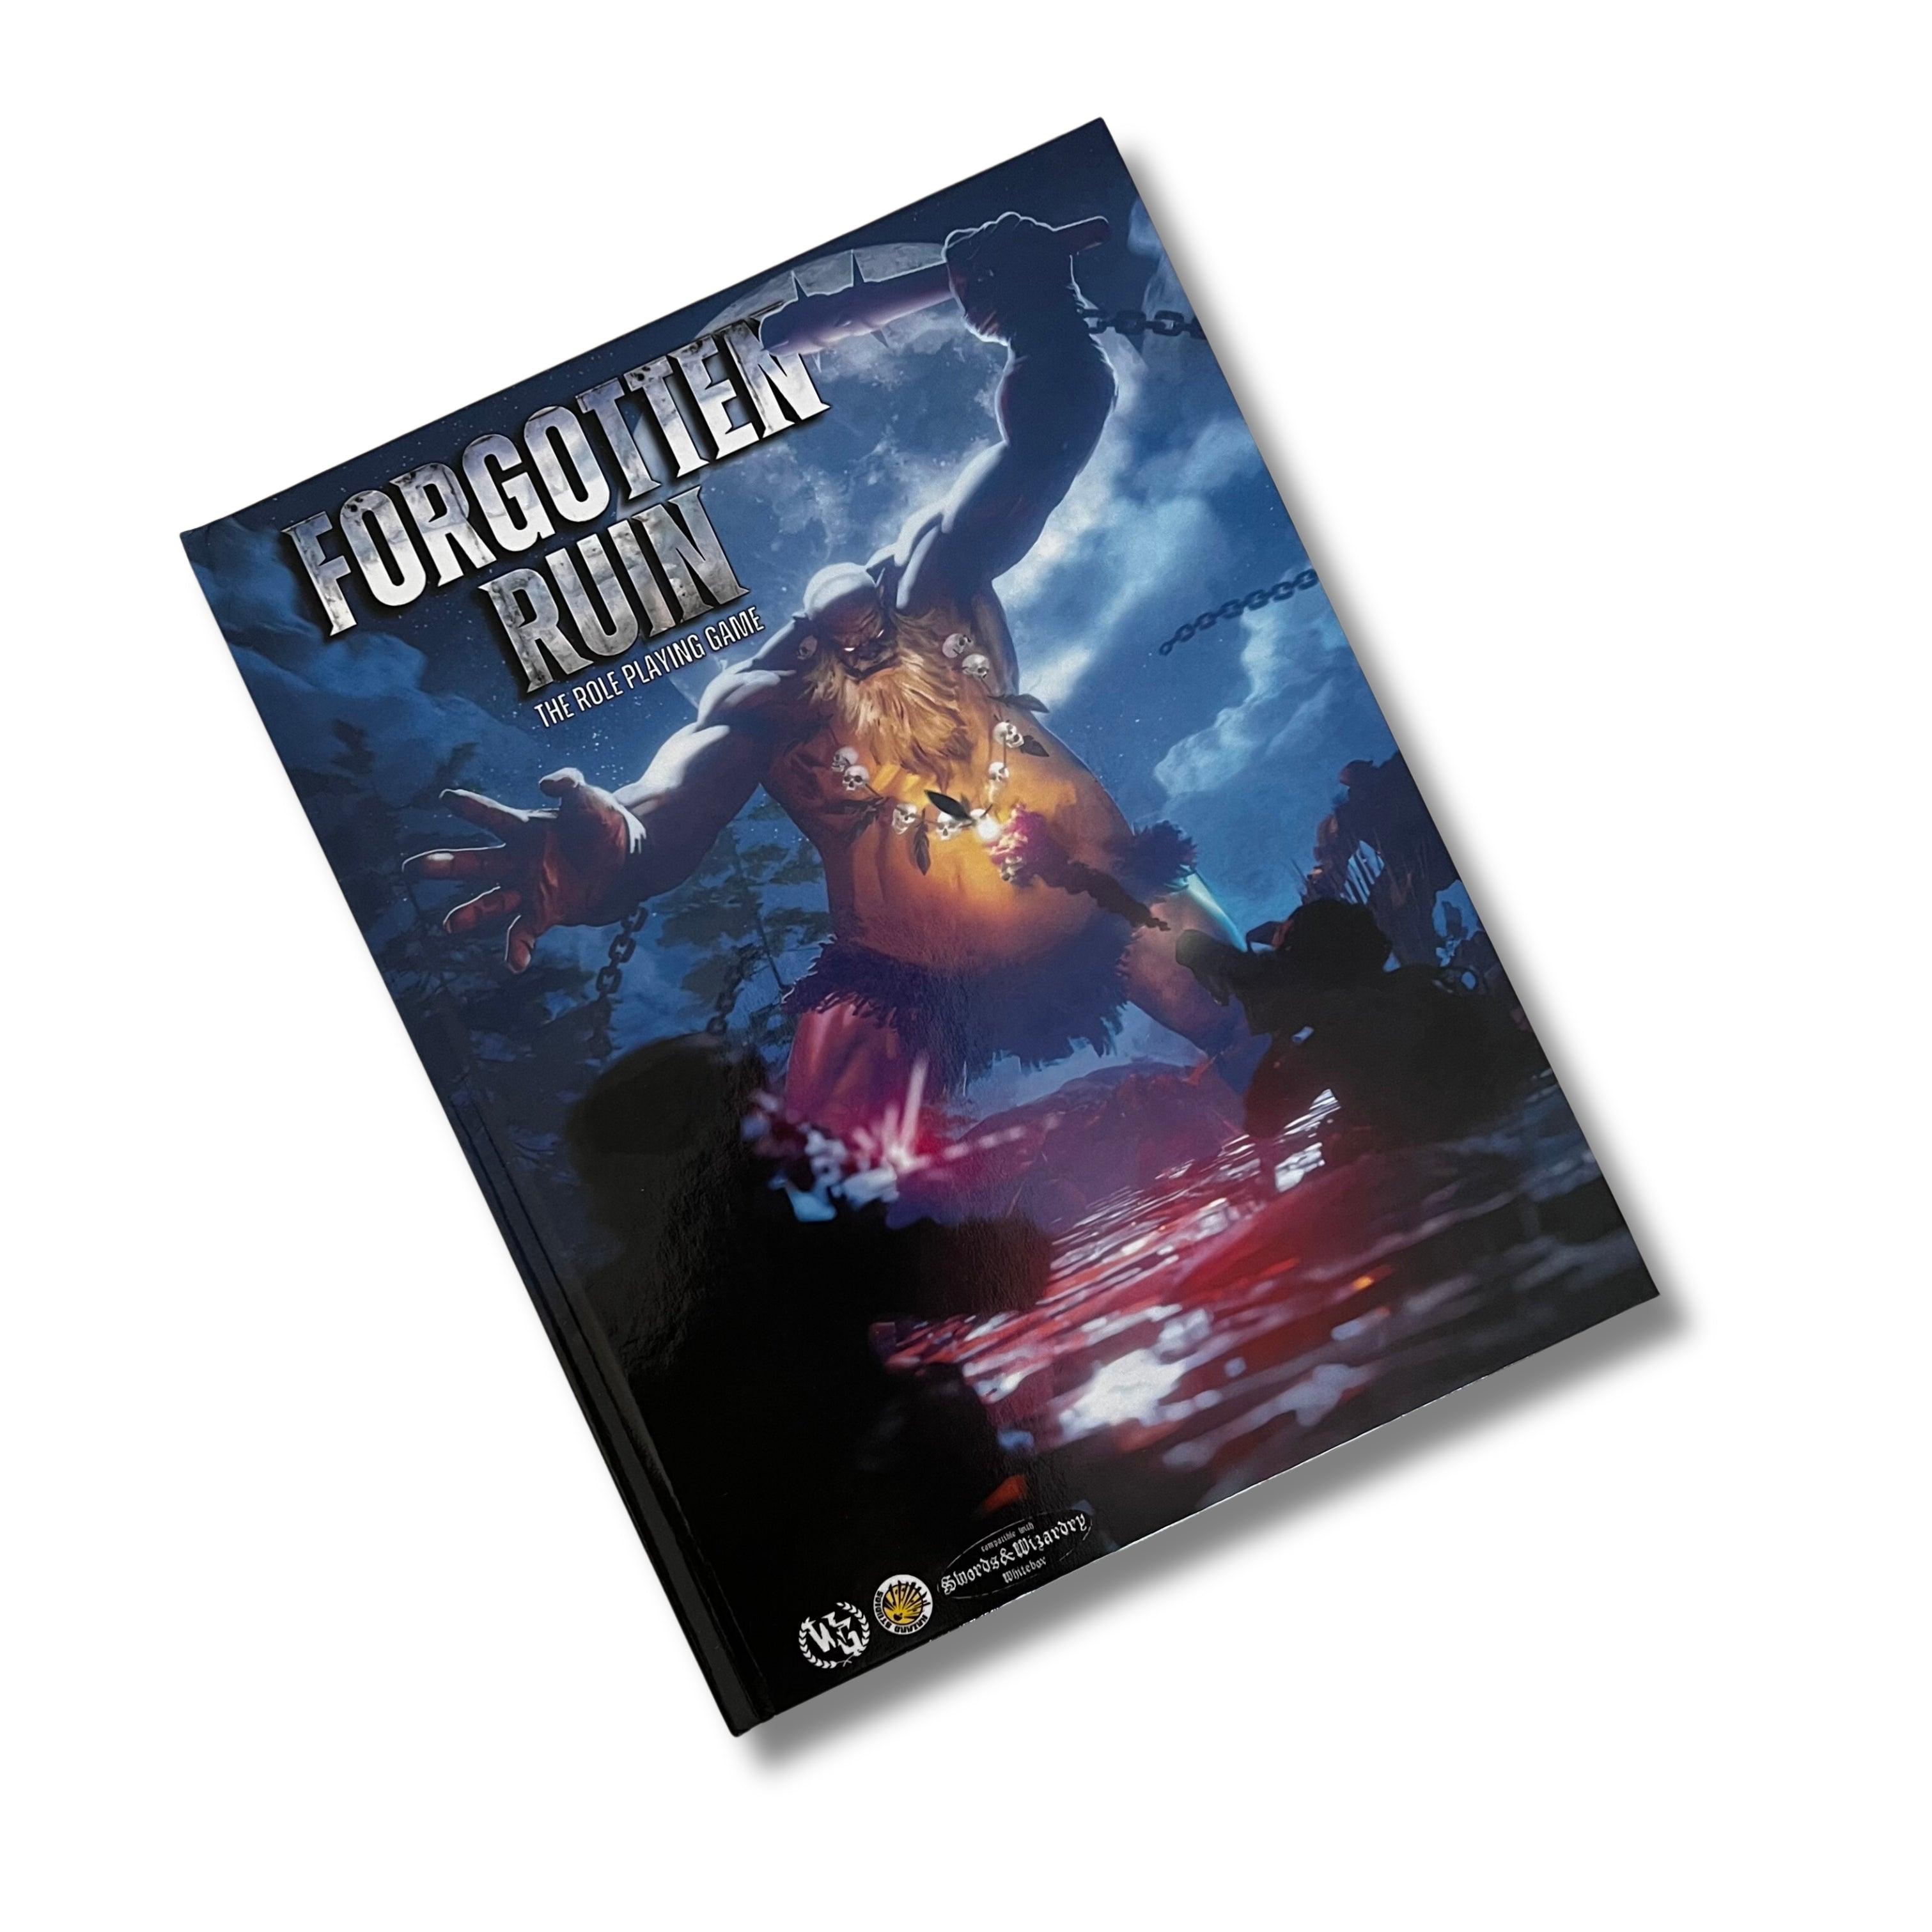 Forgotten Ruin: The RPG (Hardcover)